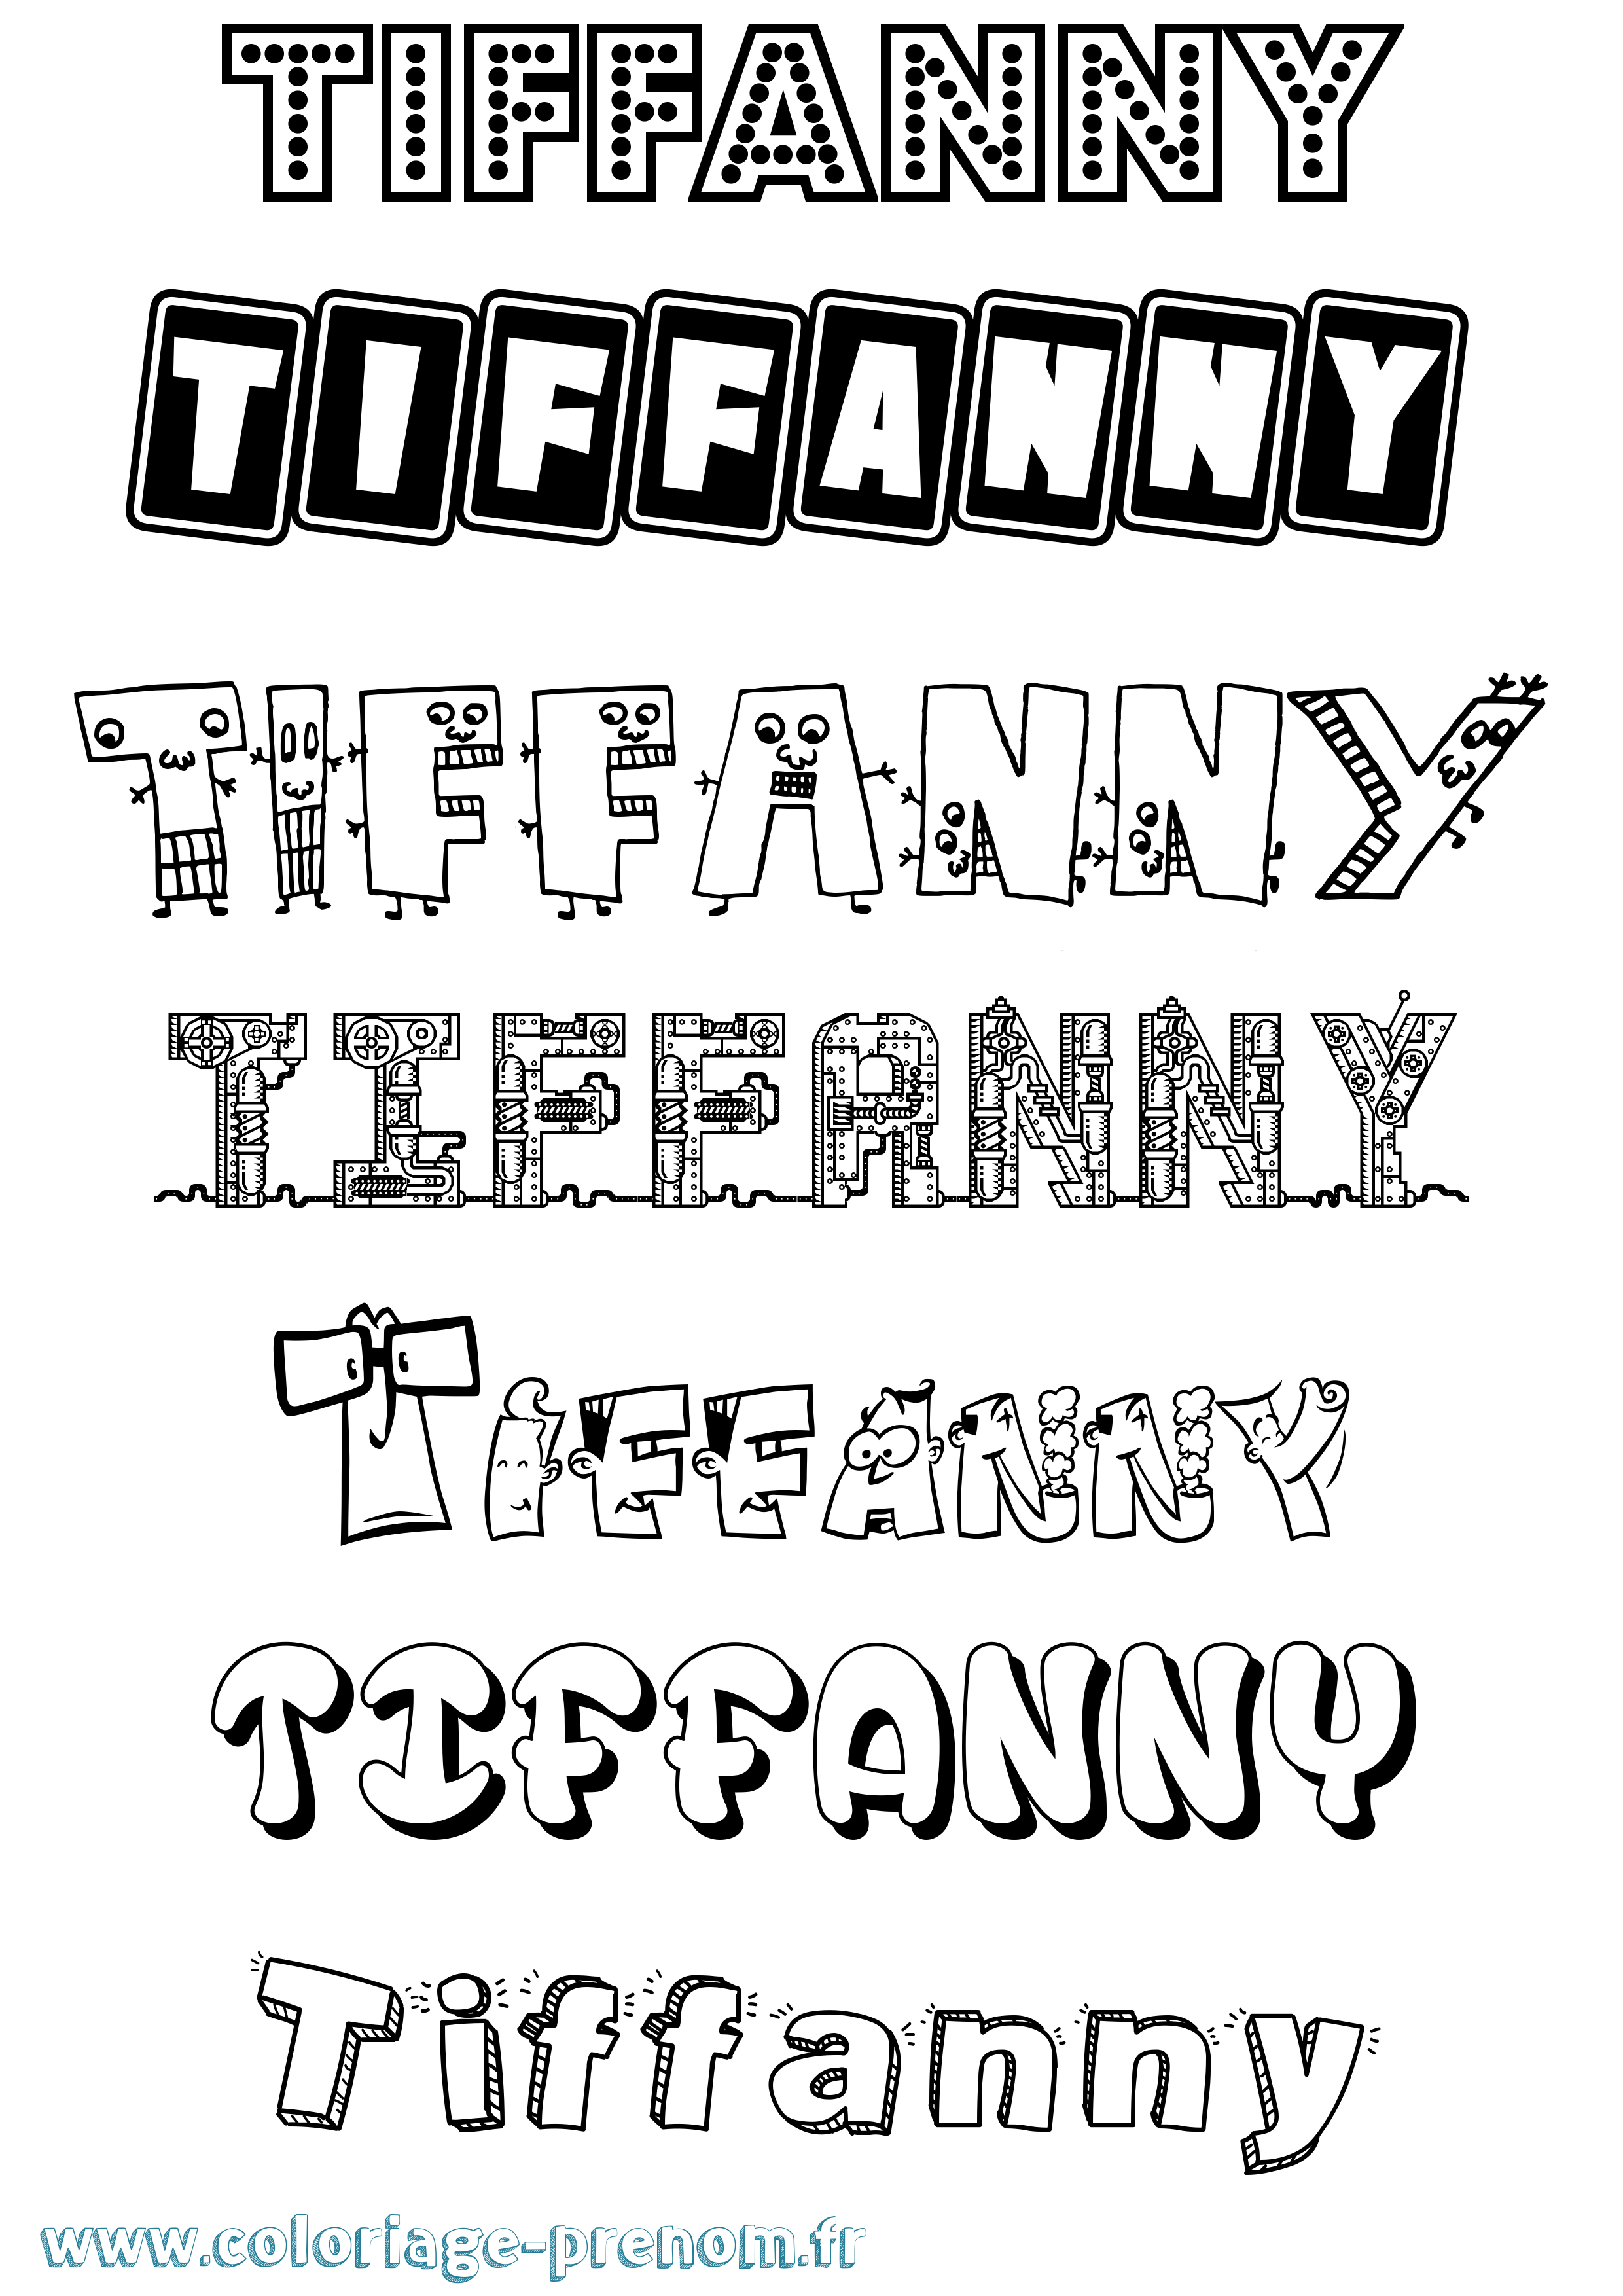 Coloriage prénom Tiffanny Fun